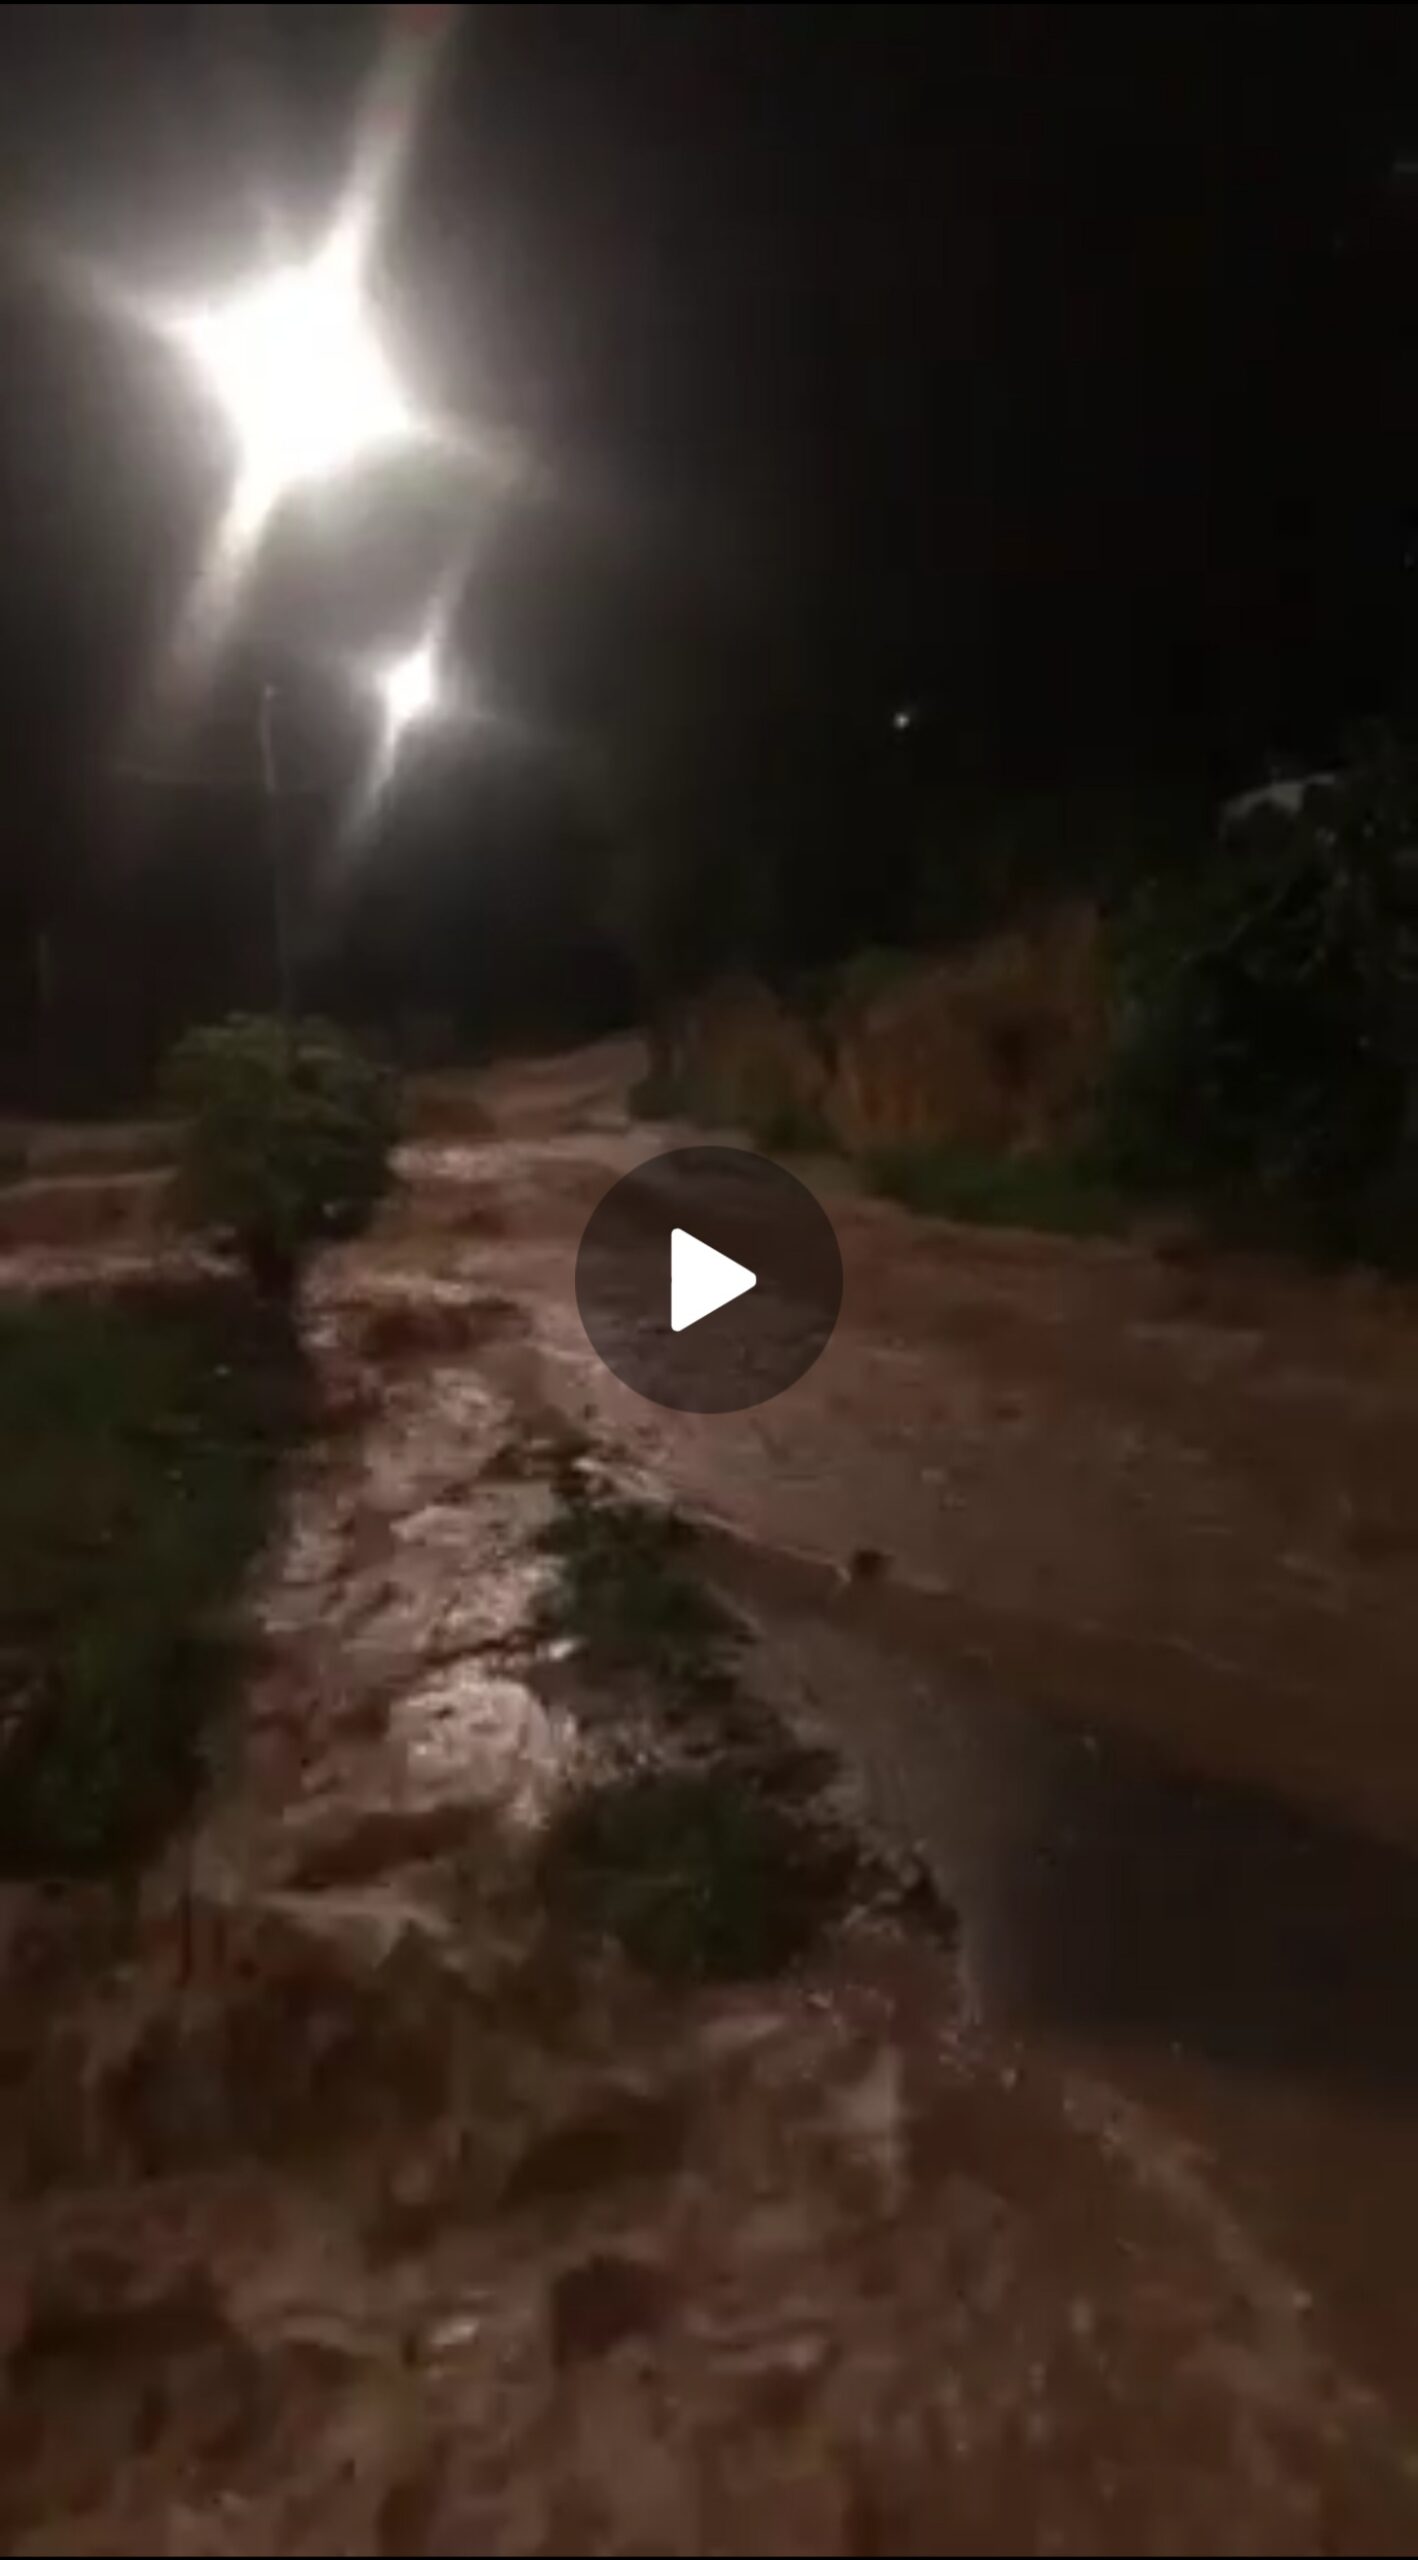 Meteo Sicilia: serata molto instabile sull'isola. Diversi allagamenti registrati! -VIDEO -